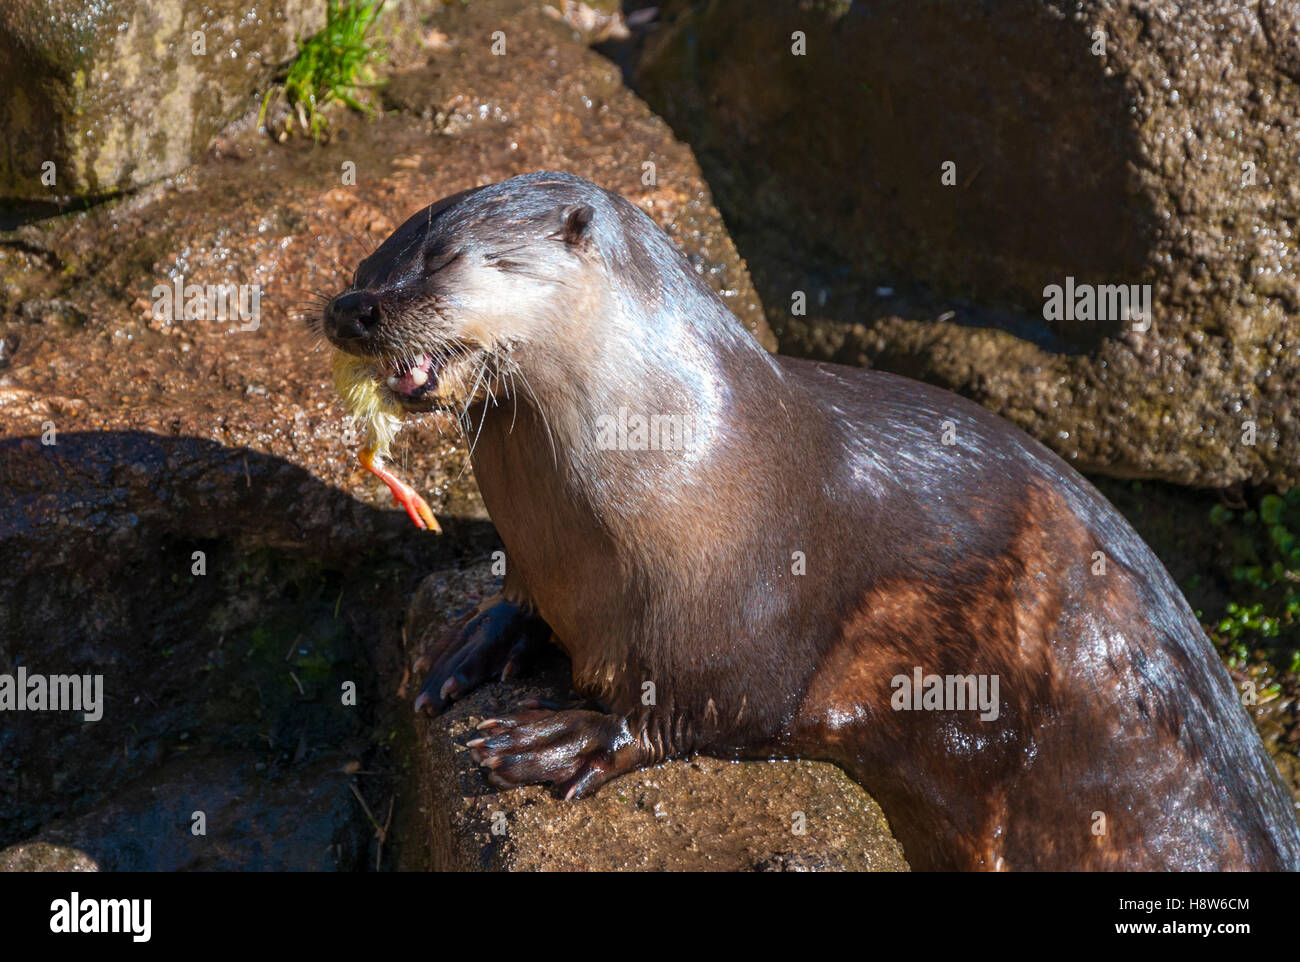 North American River Otter de manger un poussin (mort) Banque D'Images